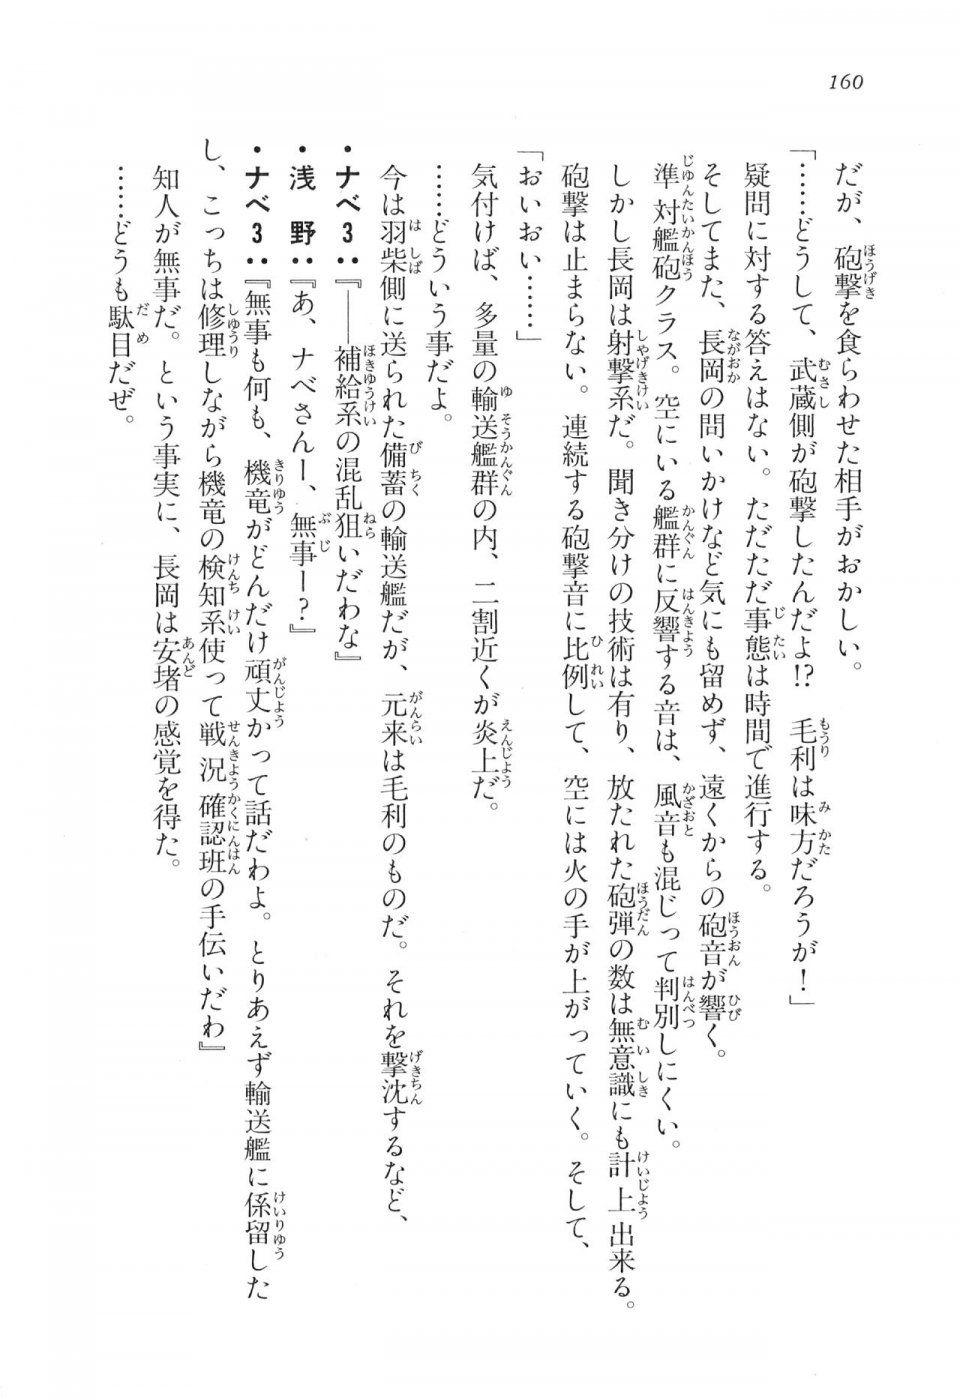 Kyoukai Senjou no Horizon LN Vol 17(7B) - Photo #160